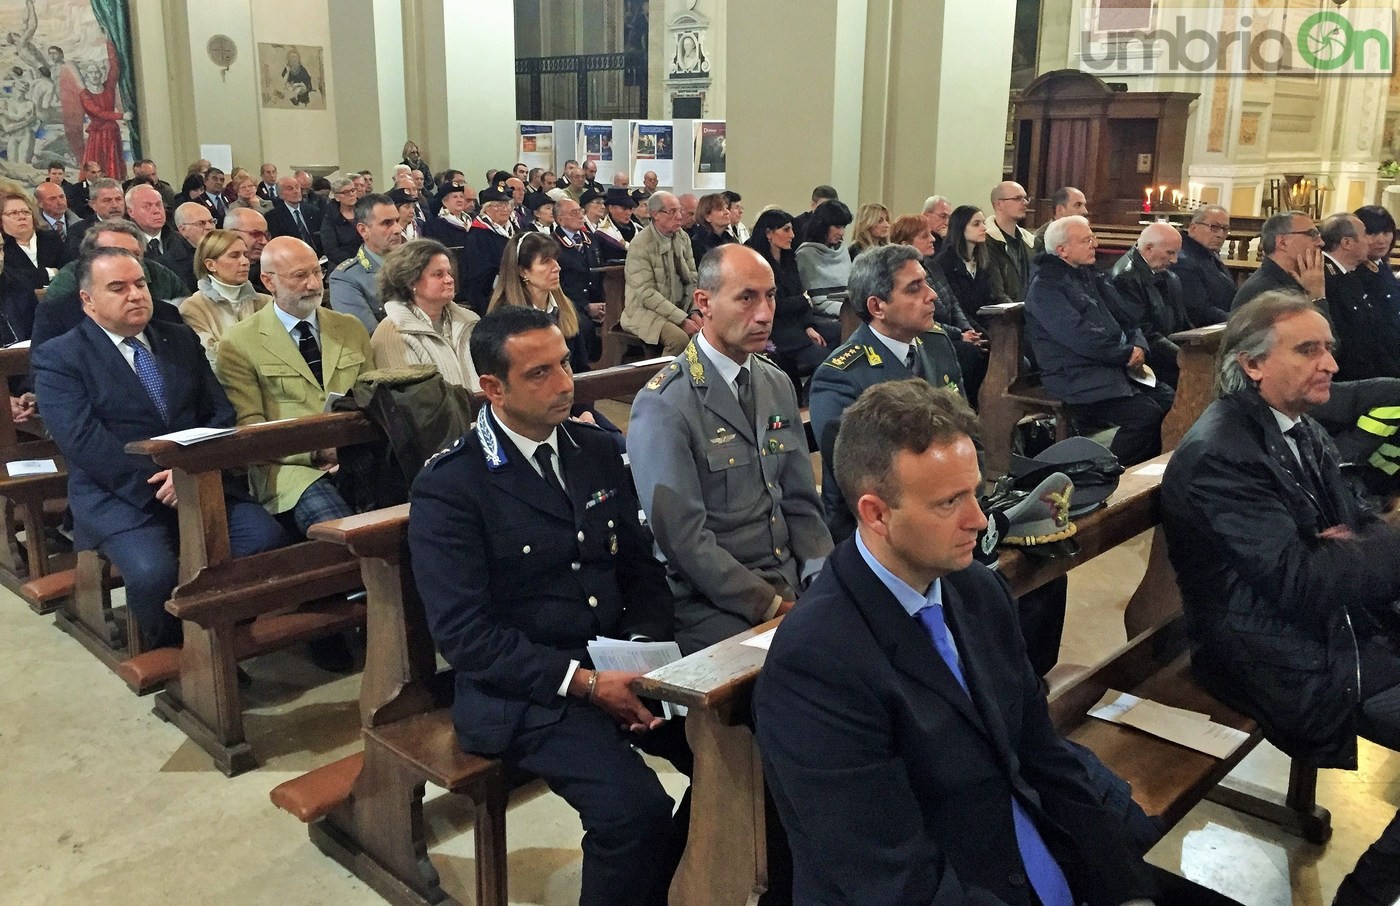 Virgo-Fidelis-carabinieri-Terni-in-cattedrale-21-novembre-2016-16